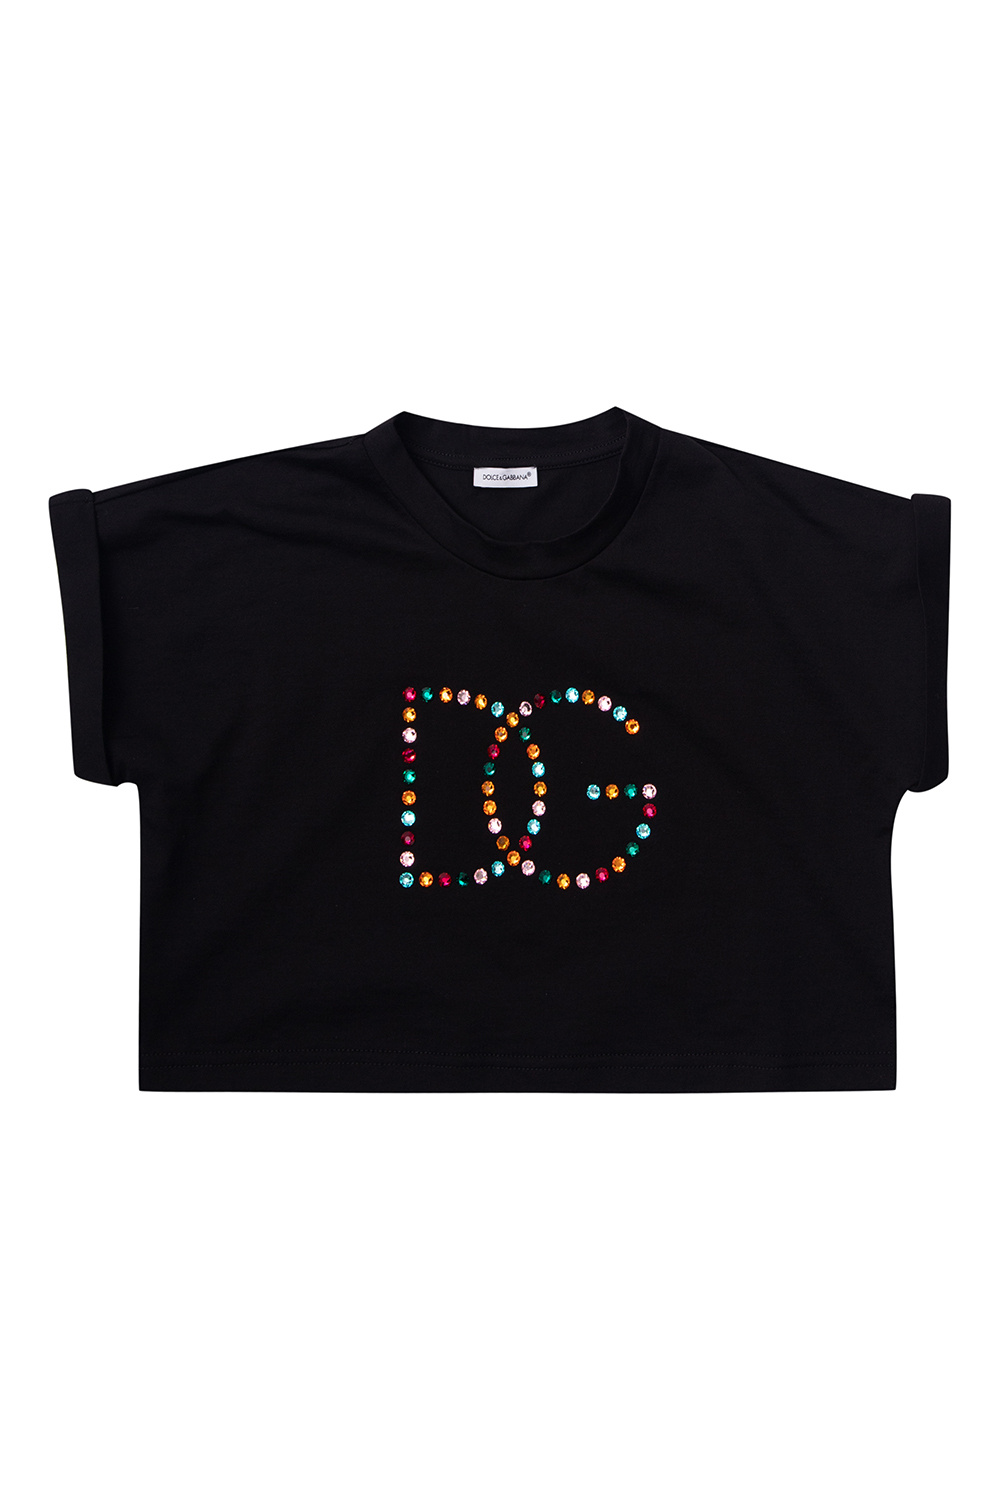 Dolce & Gabbana embroidered logo shirt Logo T-shirt